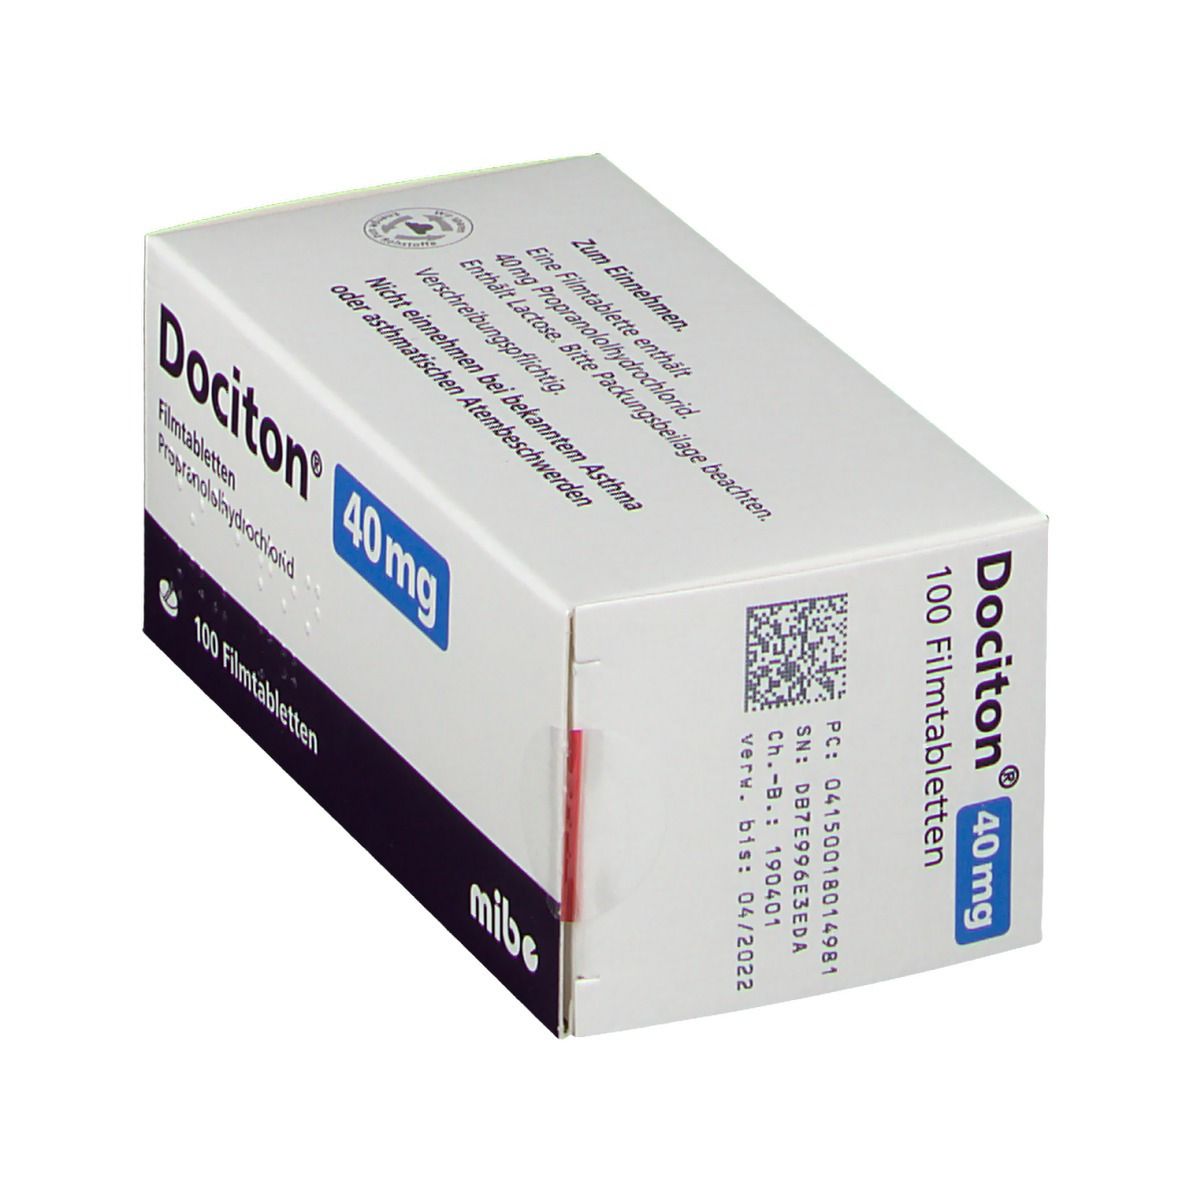 Dociton 40 mg